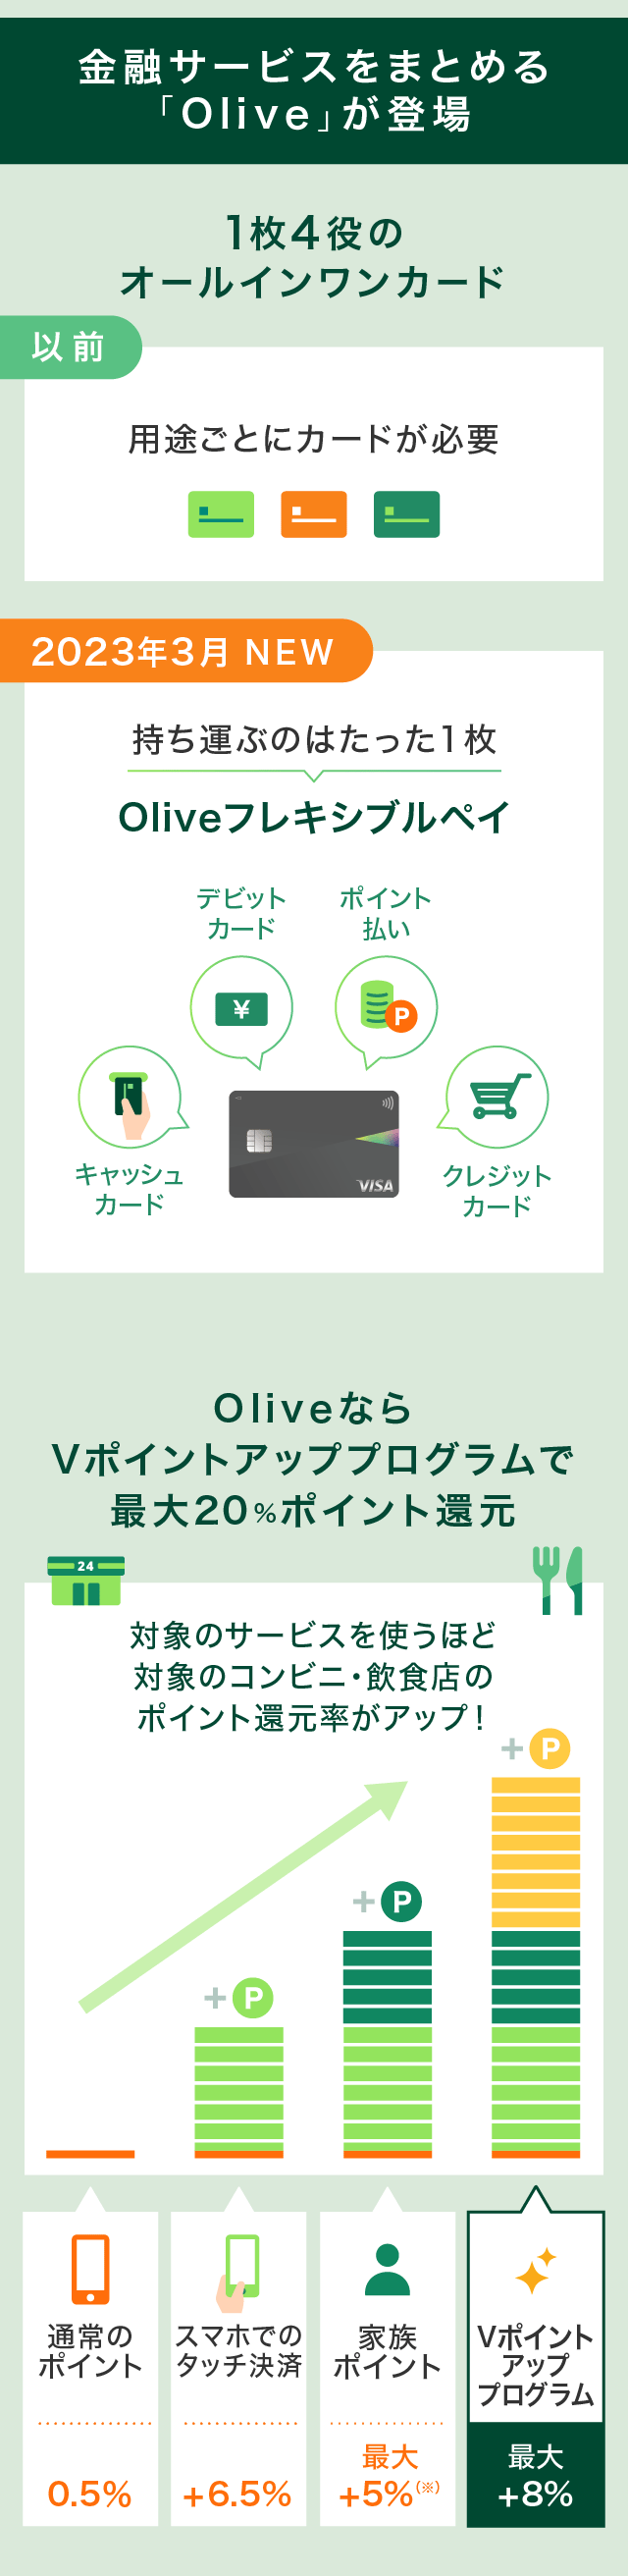 金融サービスをまとめる「Olive」が登場